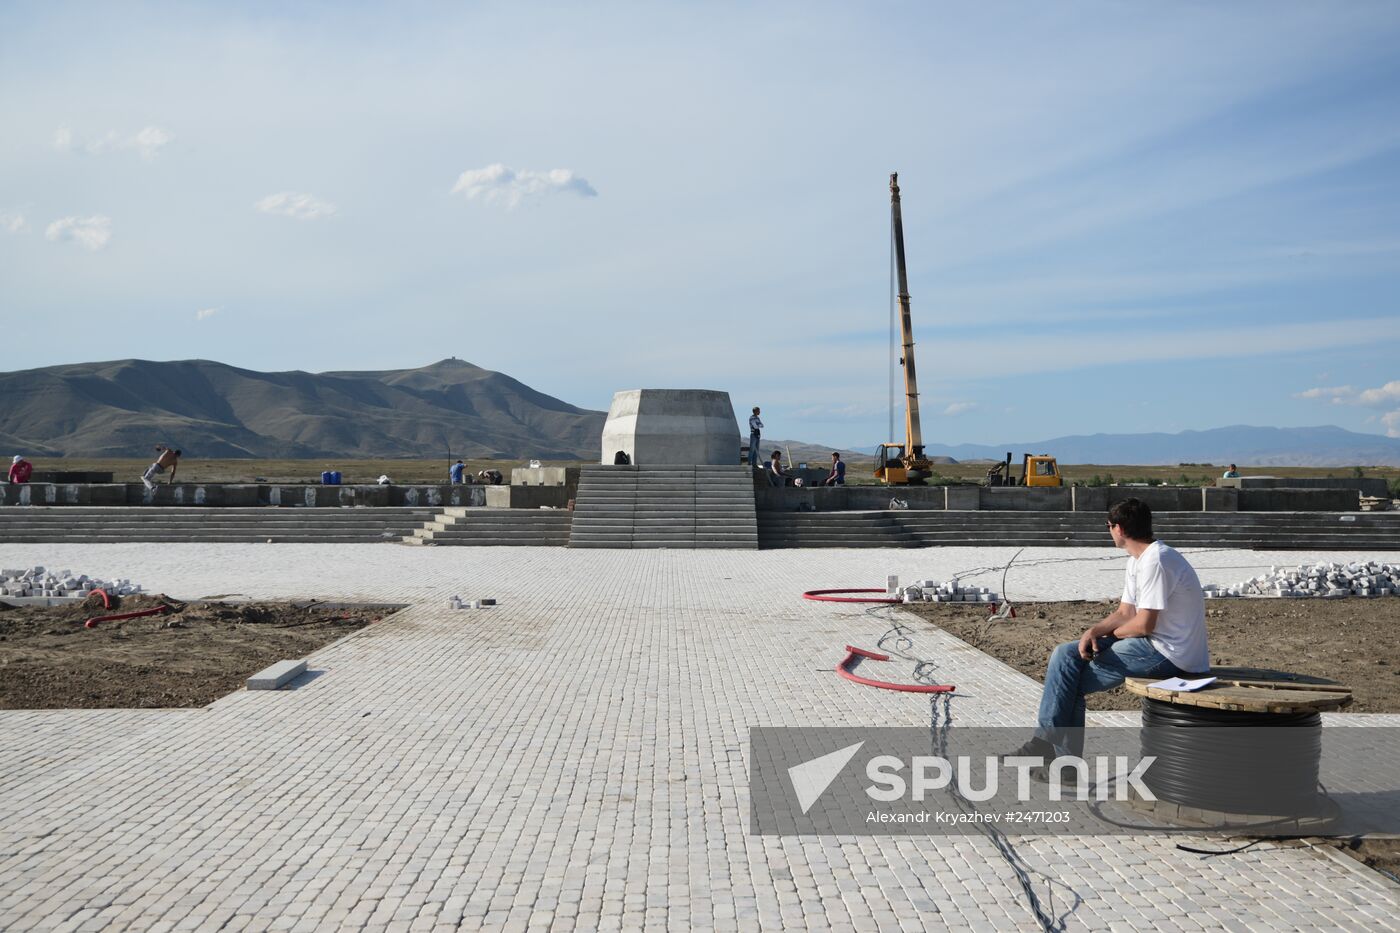 Tuva Republic celebrates 100th anniversary of unification with Russia